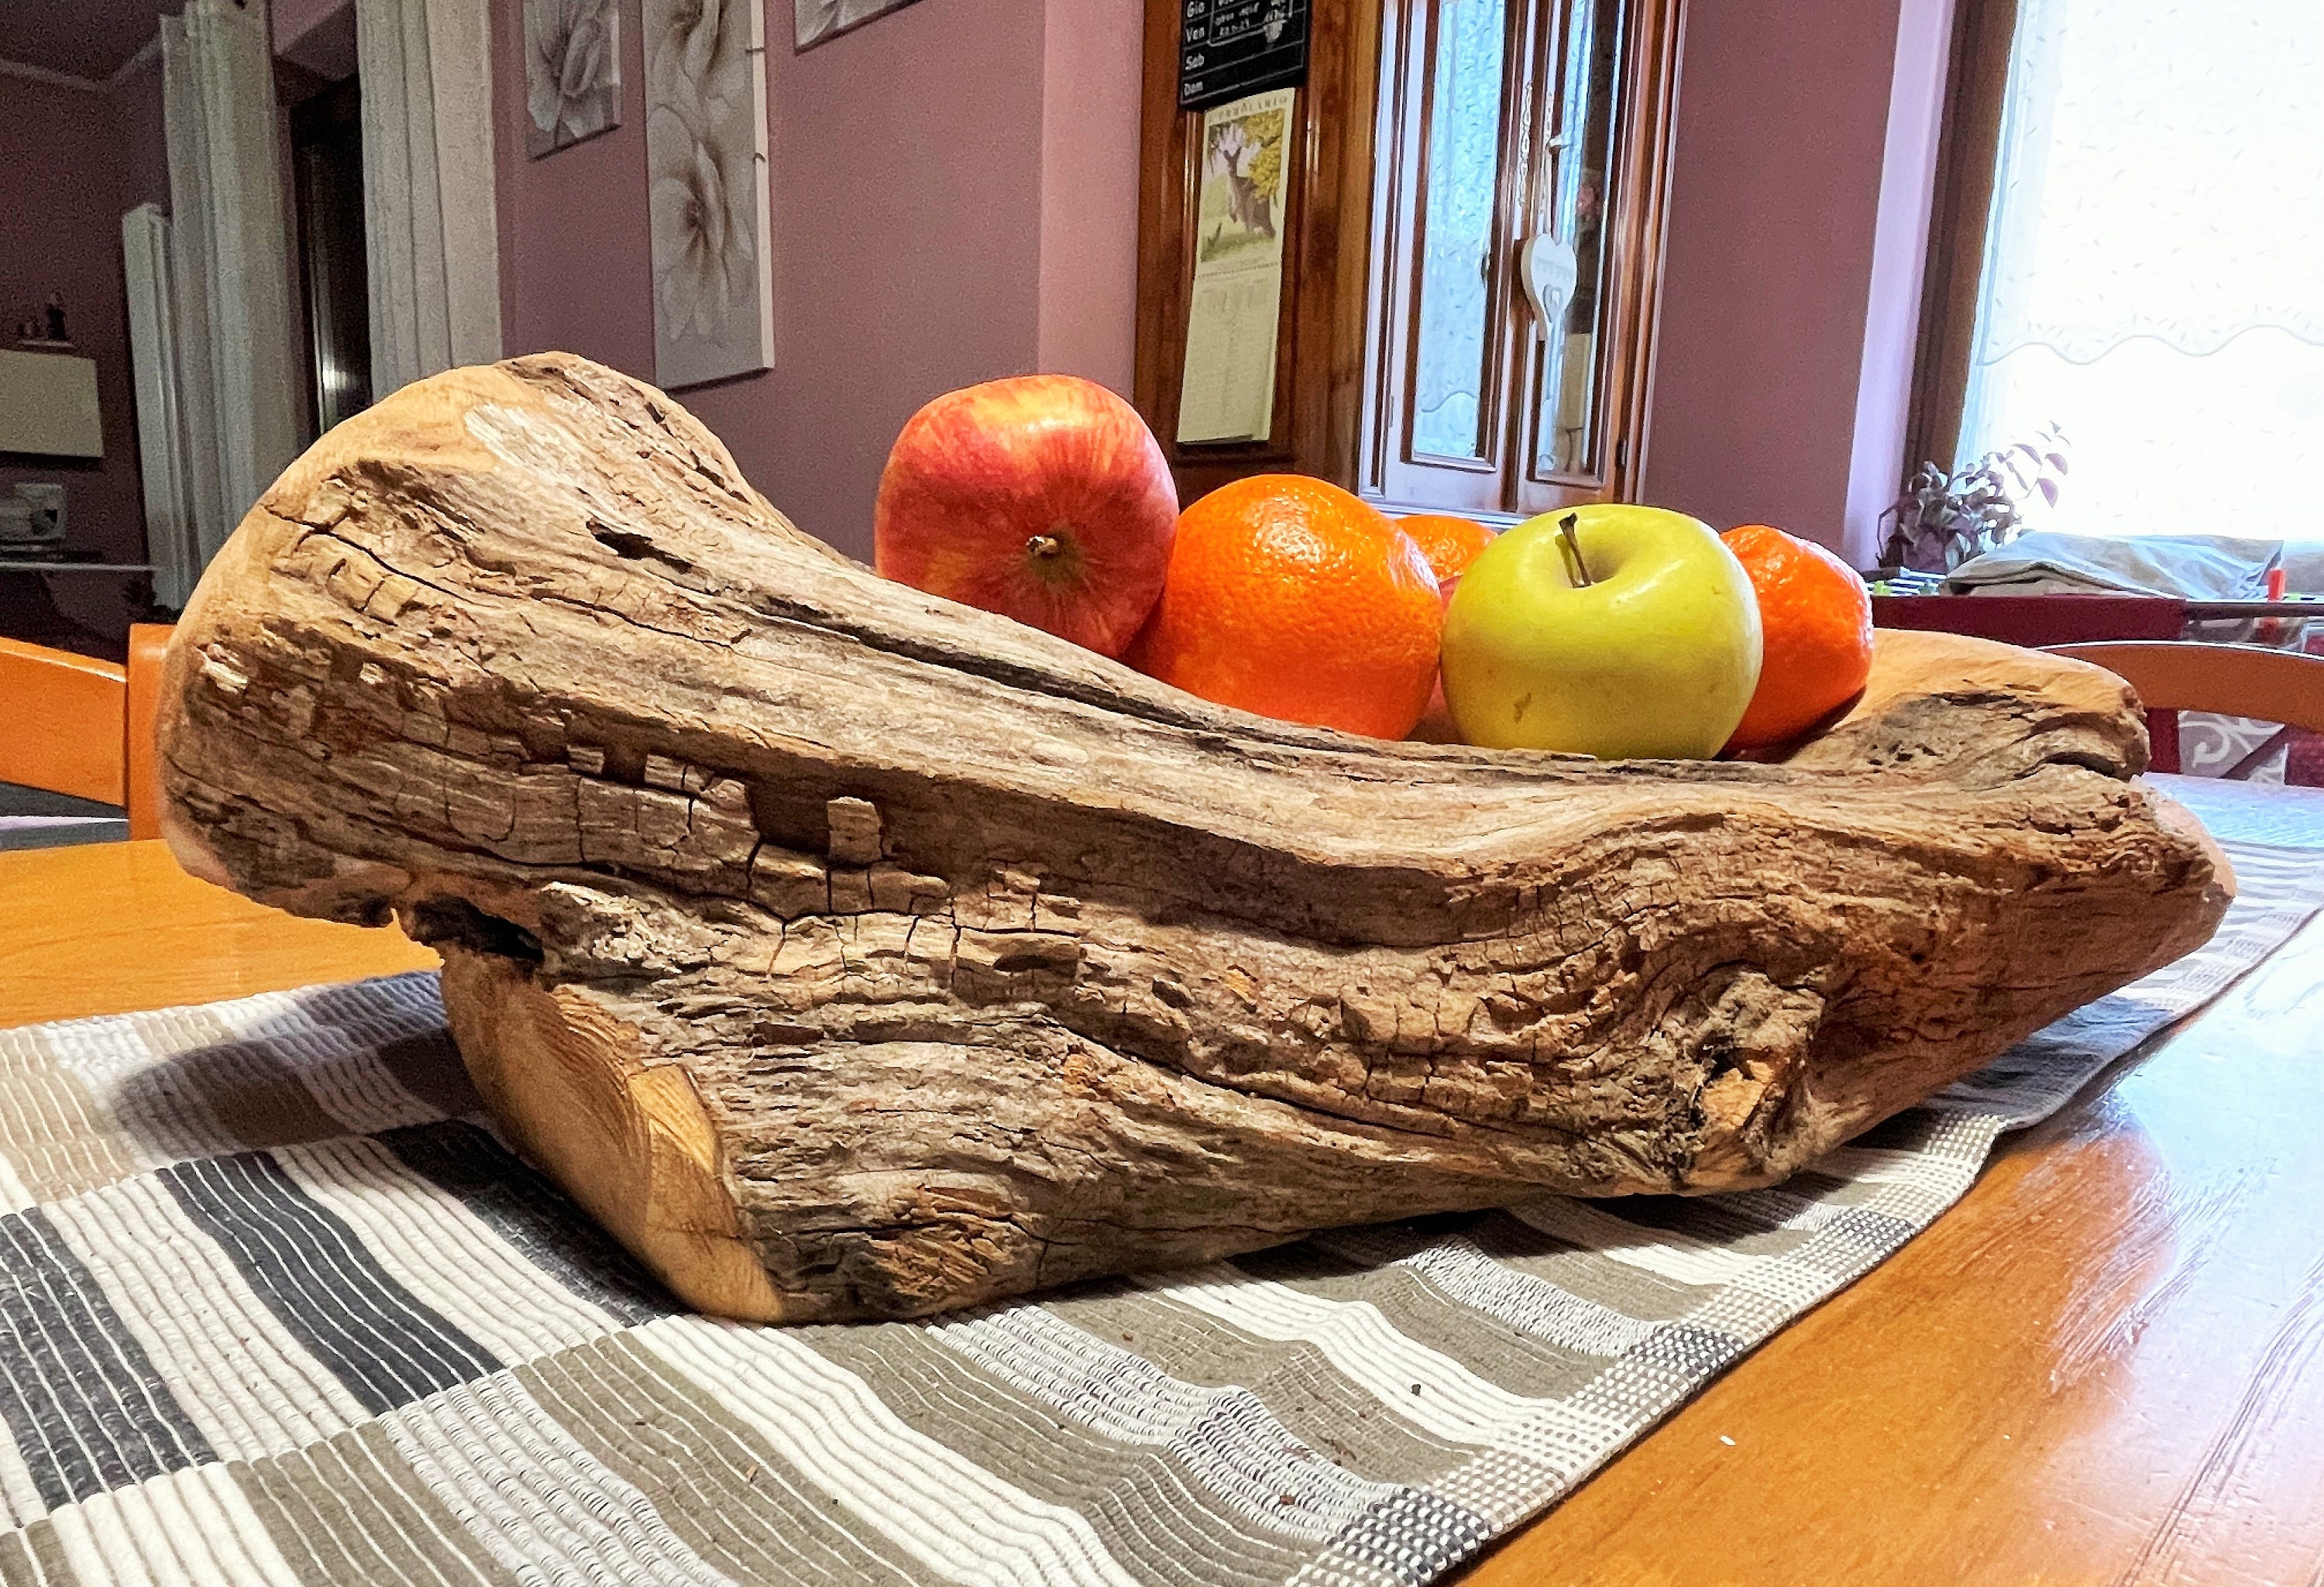 Centrotavola in legno sabbiato, porta frutta, radice di ciliegio, arredo  ecologico, legno satinato, legno grezzo, piatto legno naturale -  Italia